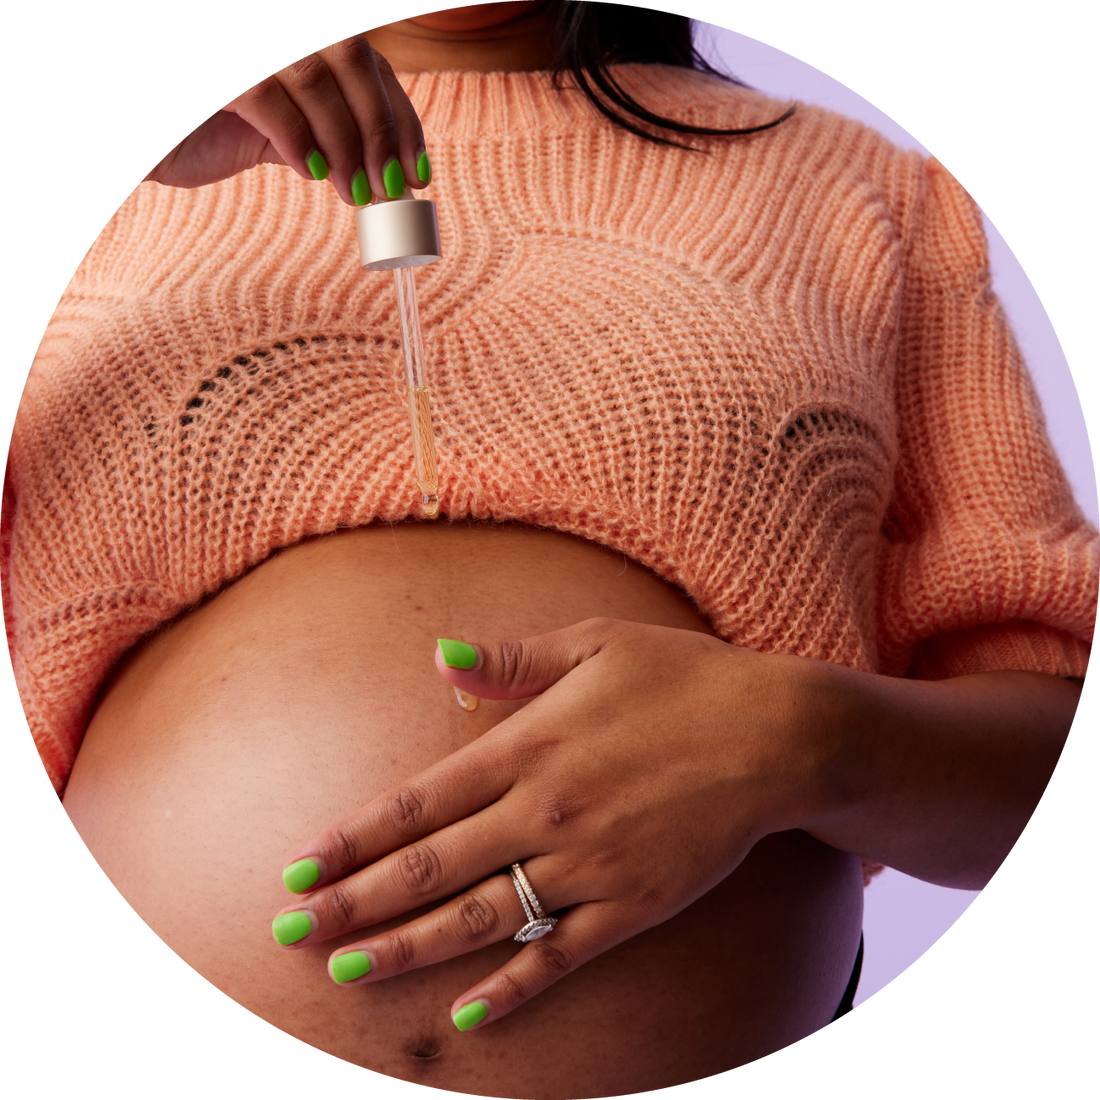 Explore The Pregnancy Guide